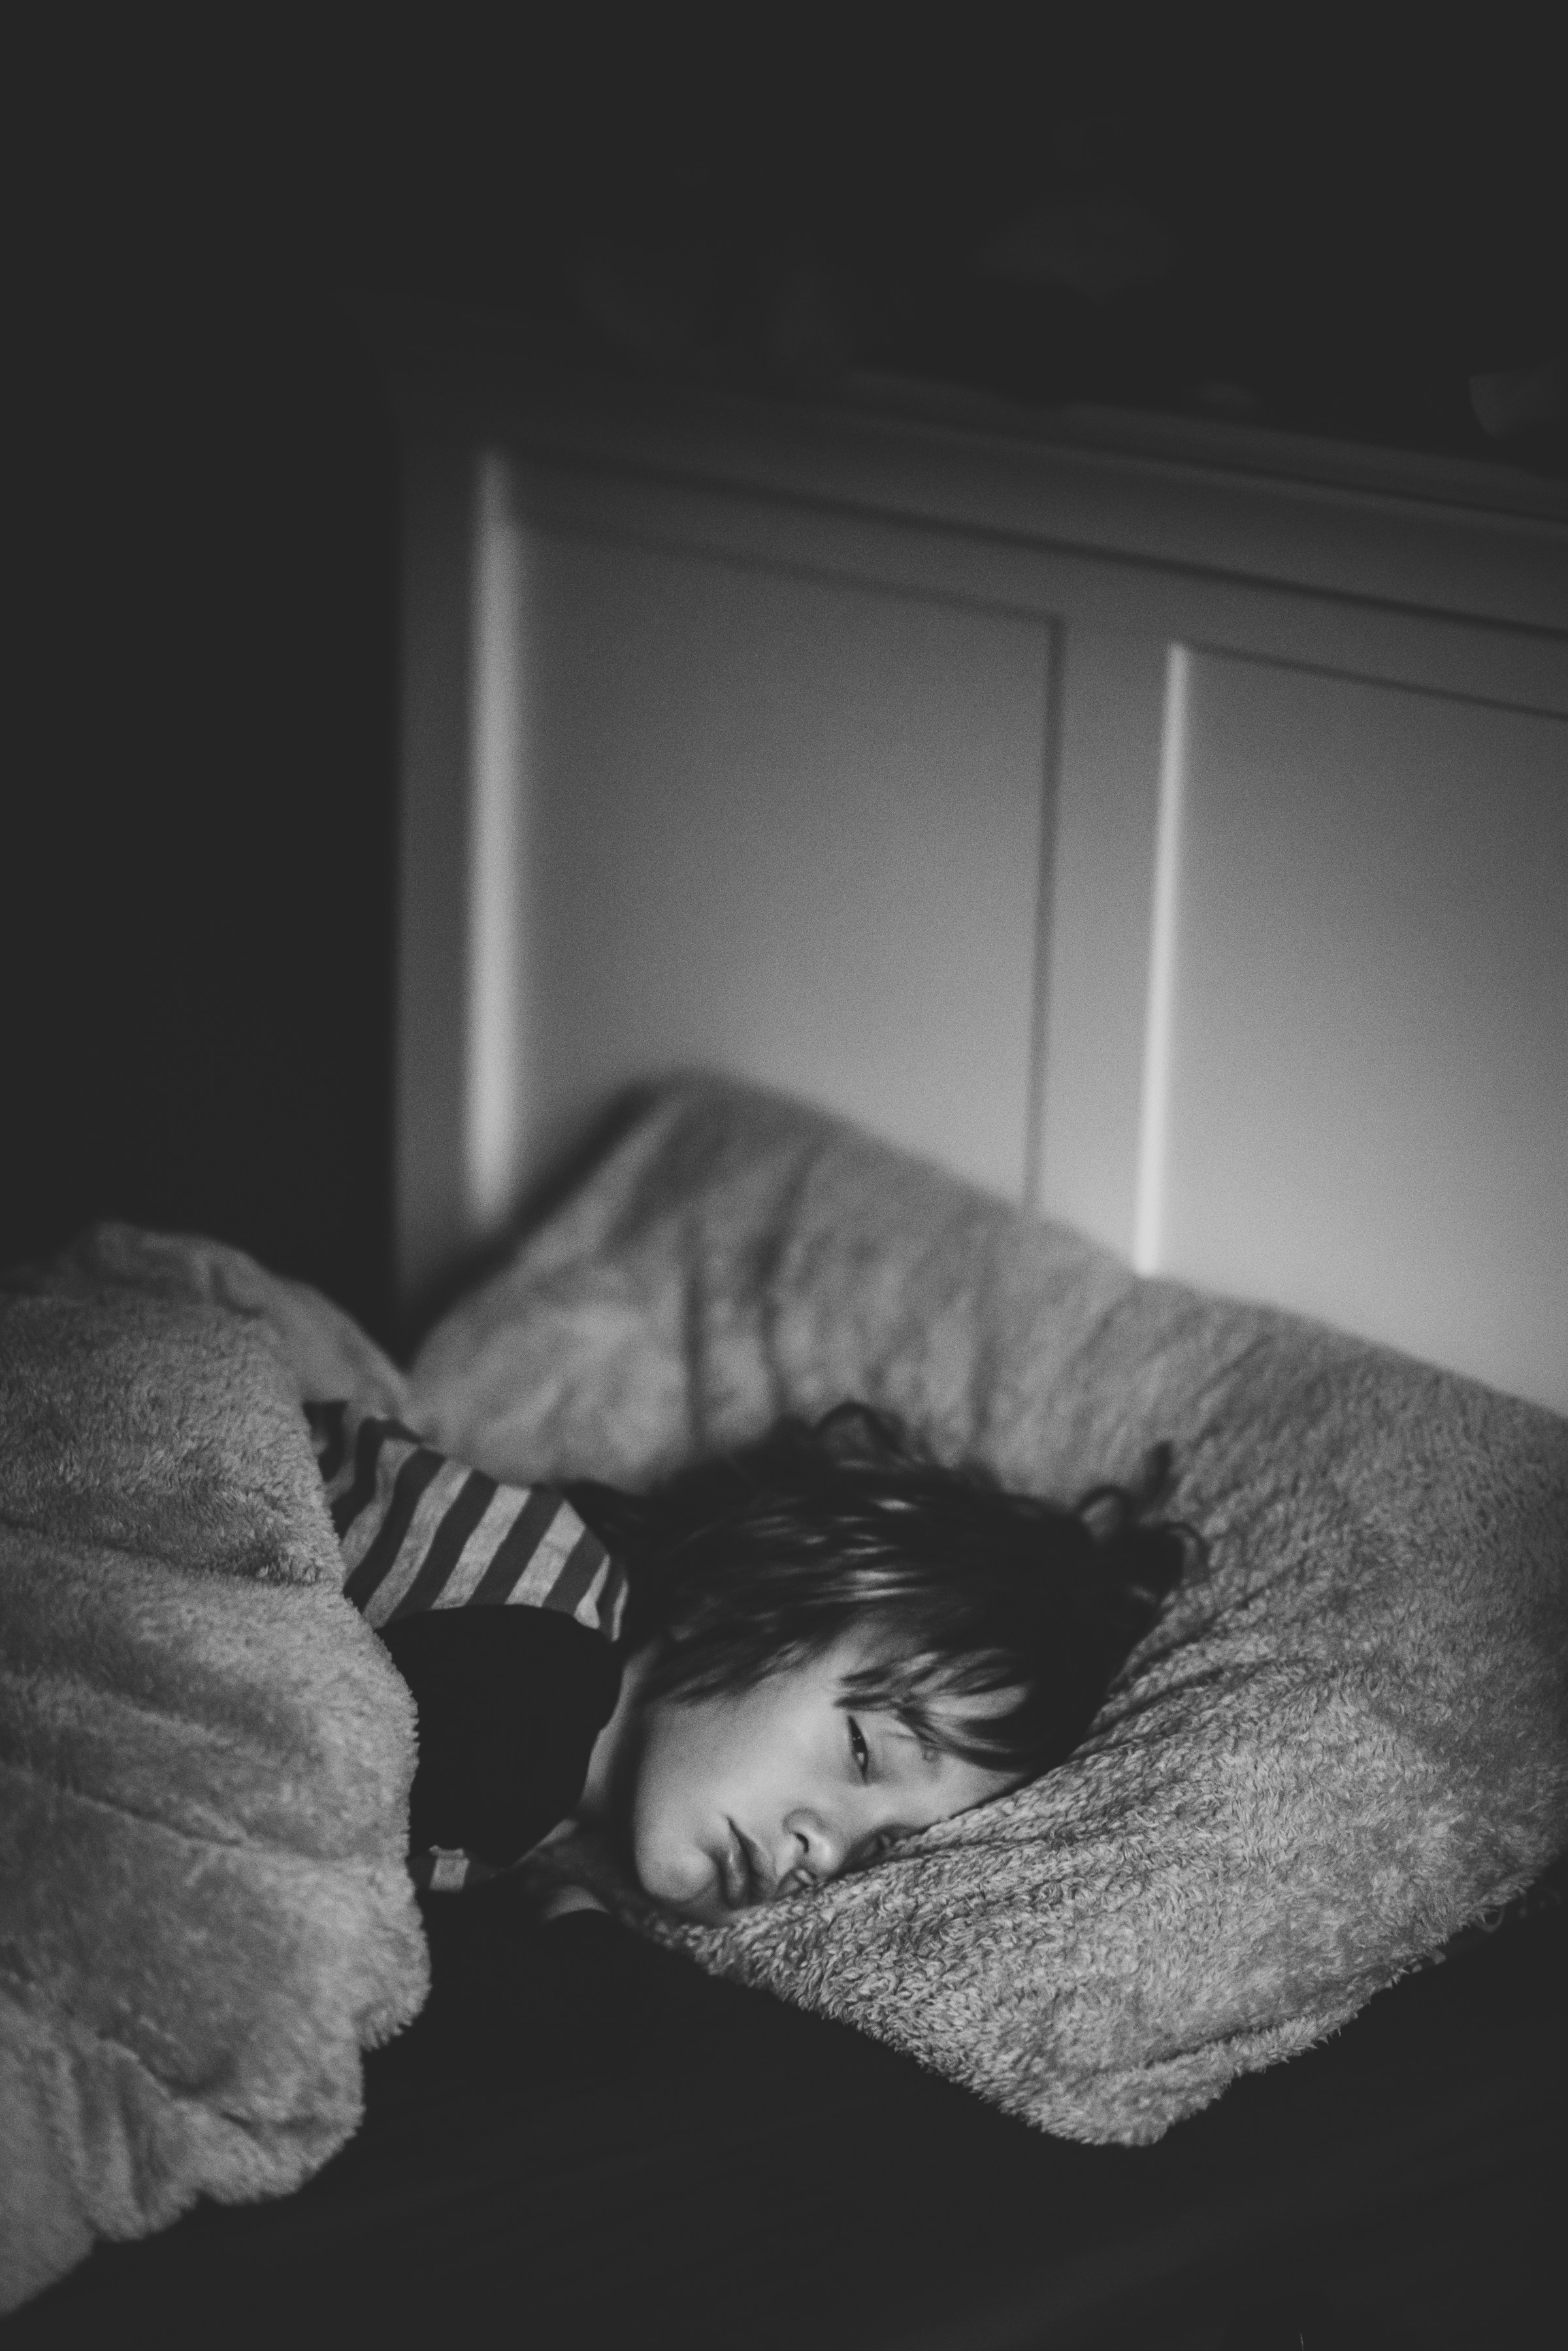 A little boy lying in bed | Source: Unsplash